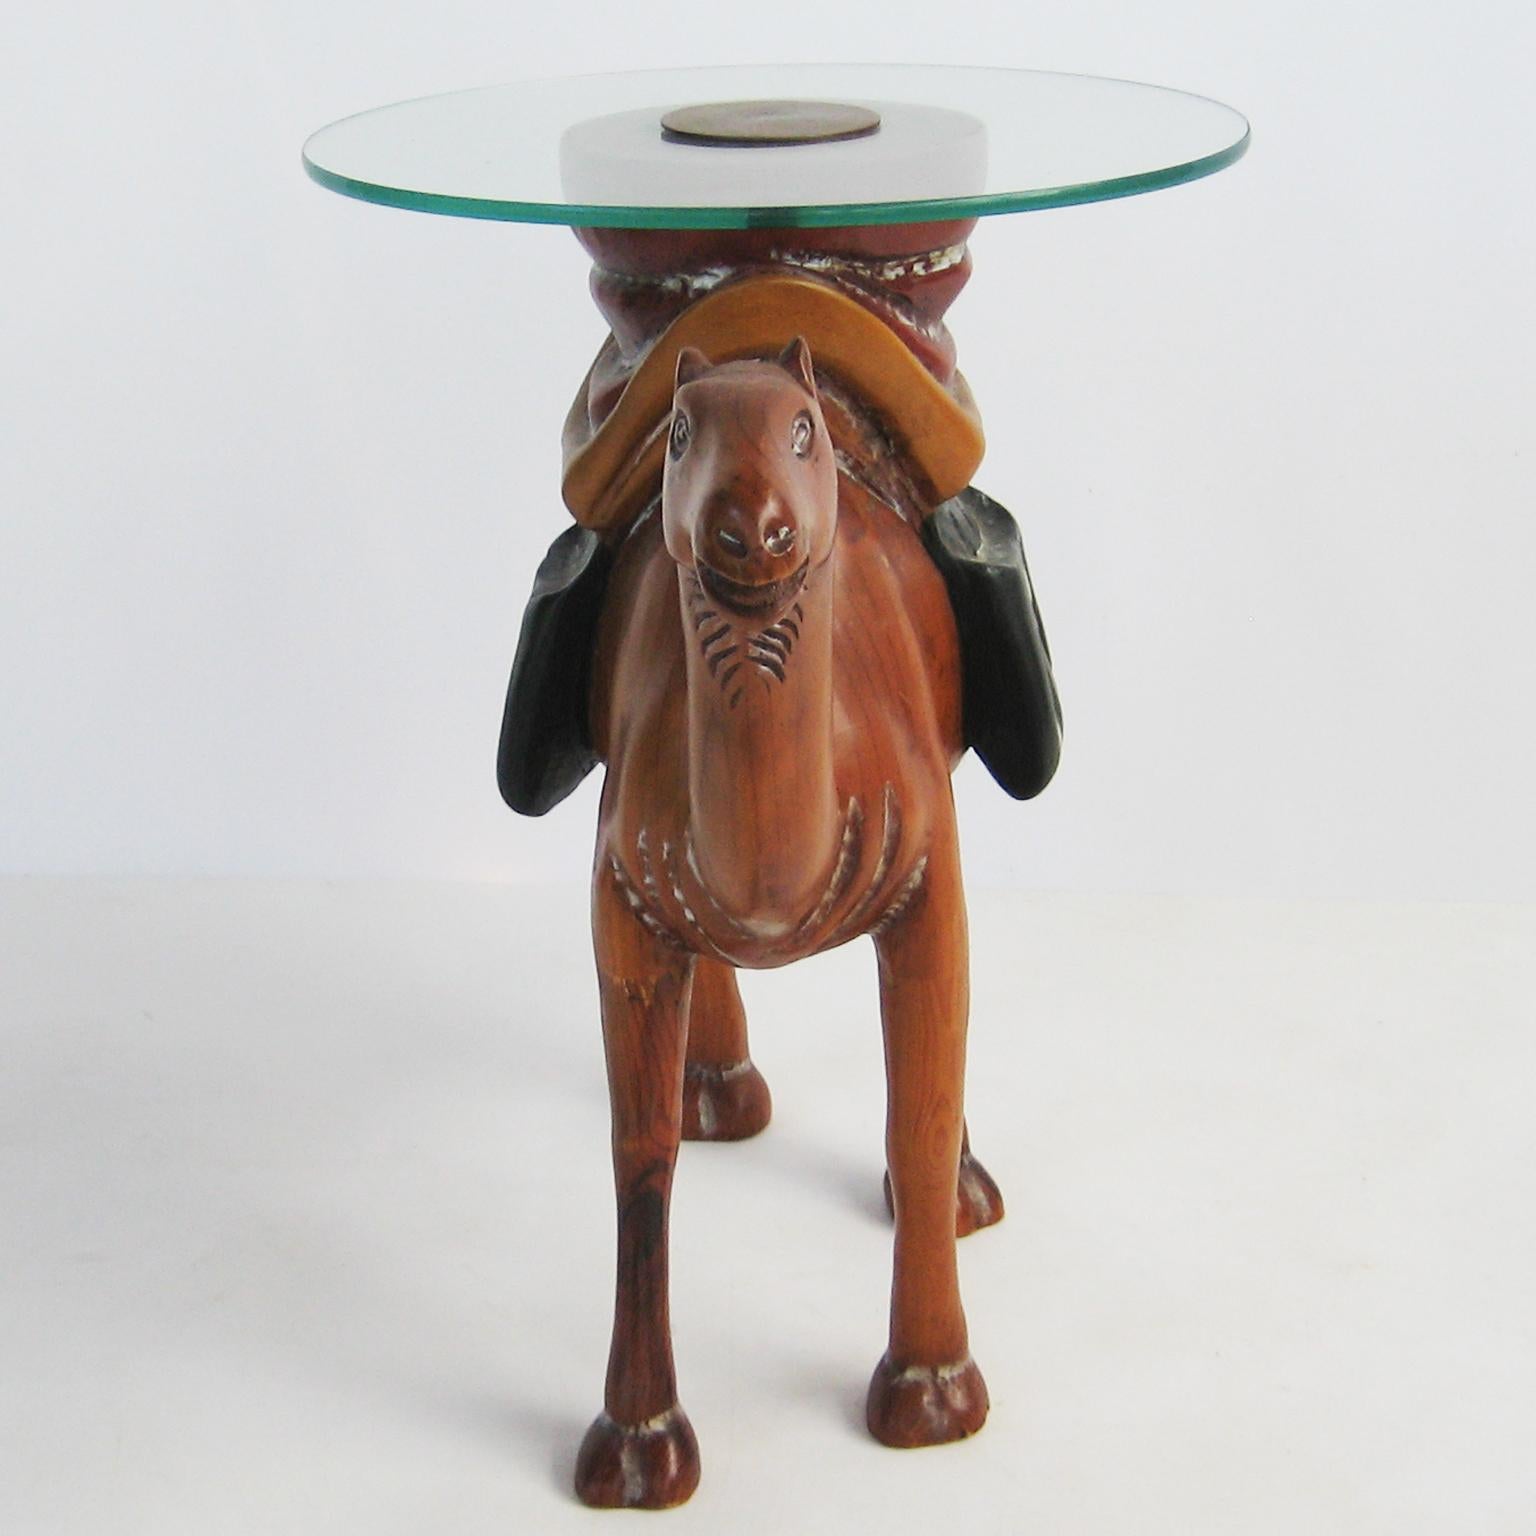 Table d'appoint, sculptée à la main en forme de chameau, avec des accents polychromes, un plateau en verre de 16 pouces repose sur sa selle. 

Stock ID : D2539